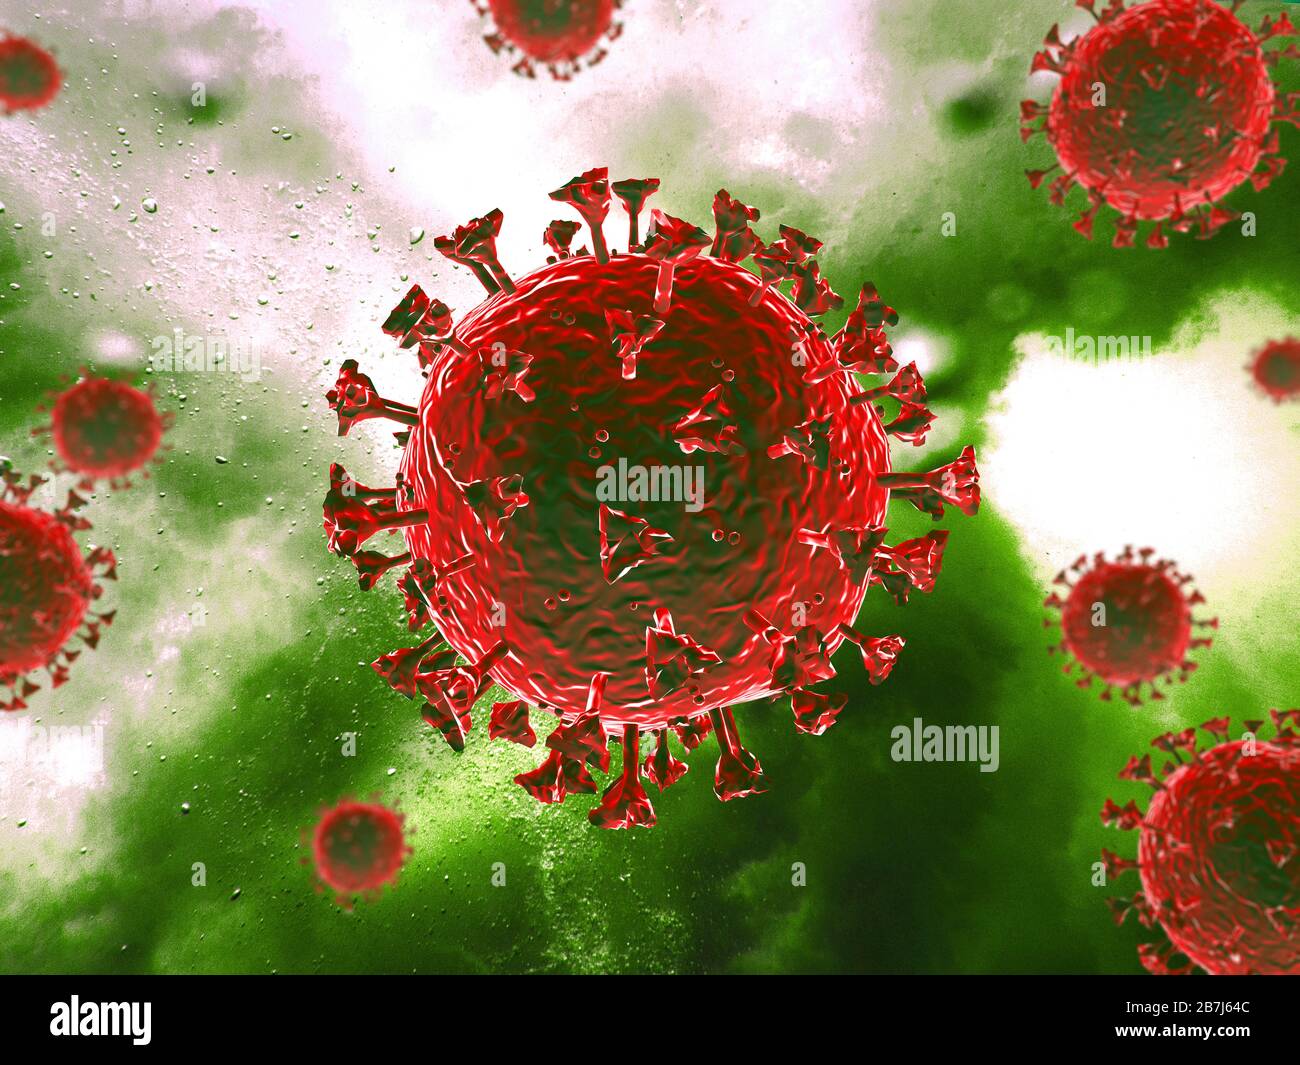 Scène du virus Corona avec structure détaillée. Sujet rouge sur fond vert. Banque D'Images